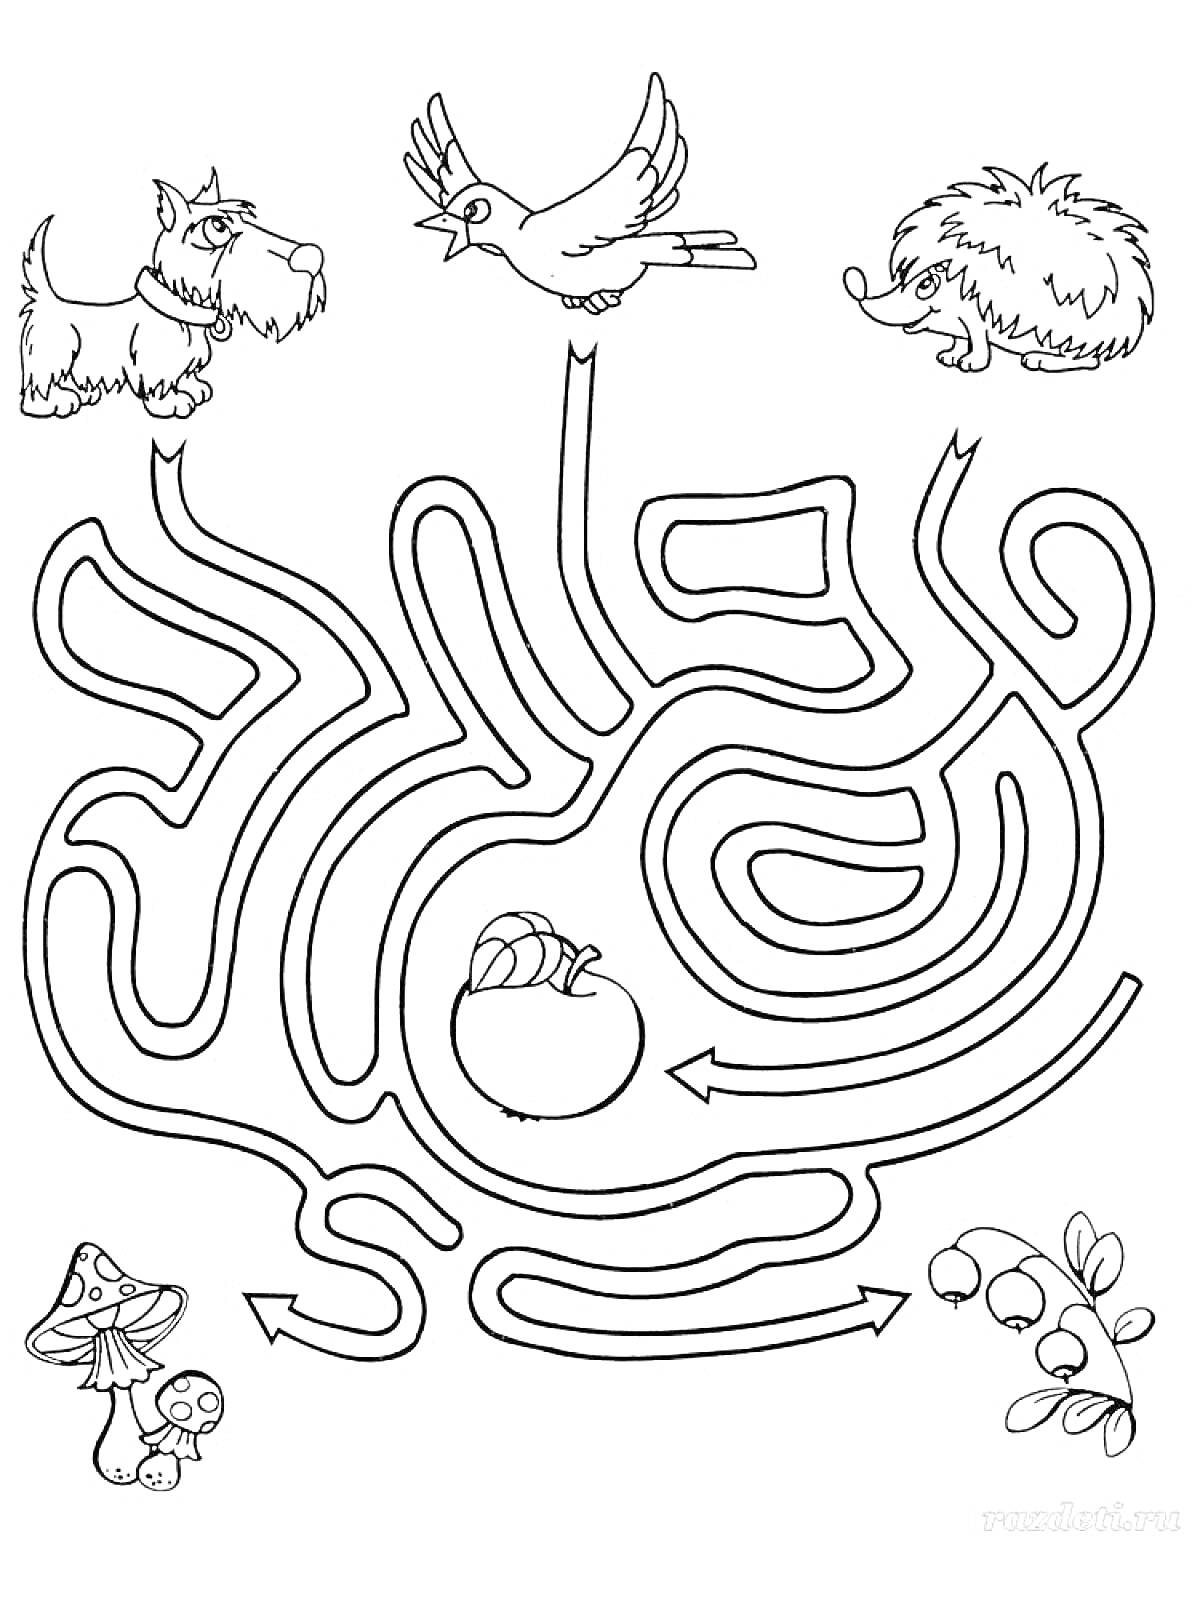 Раскраска Лабиринт с собакой, птицей, улиткой, ежом, грибами и ягодами